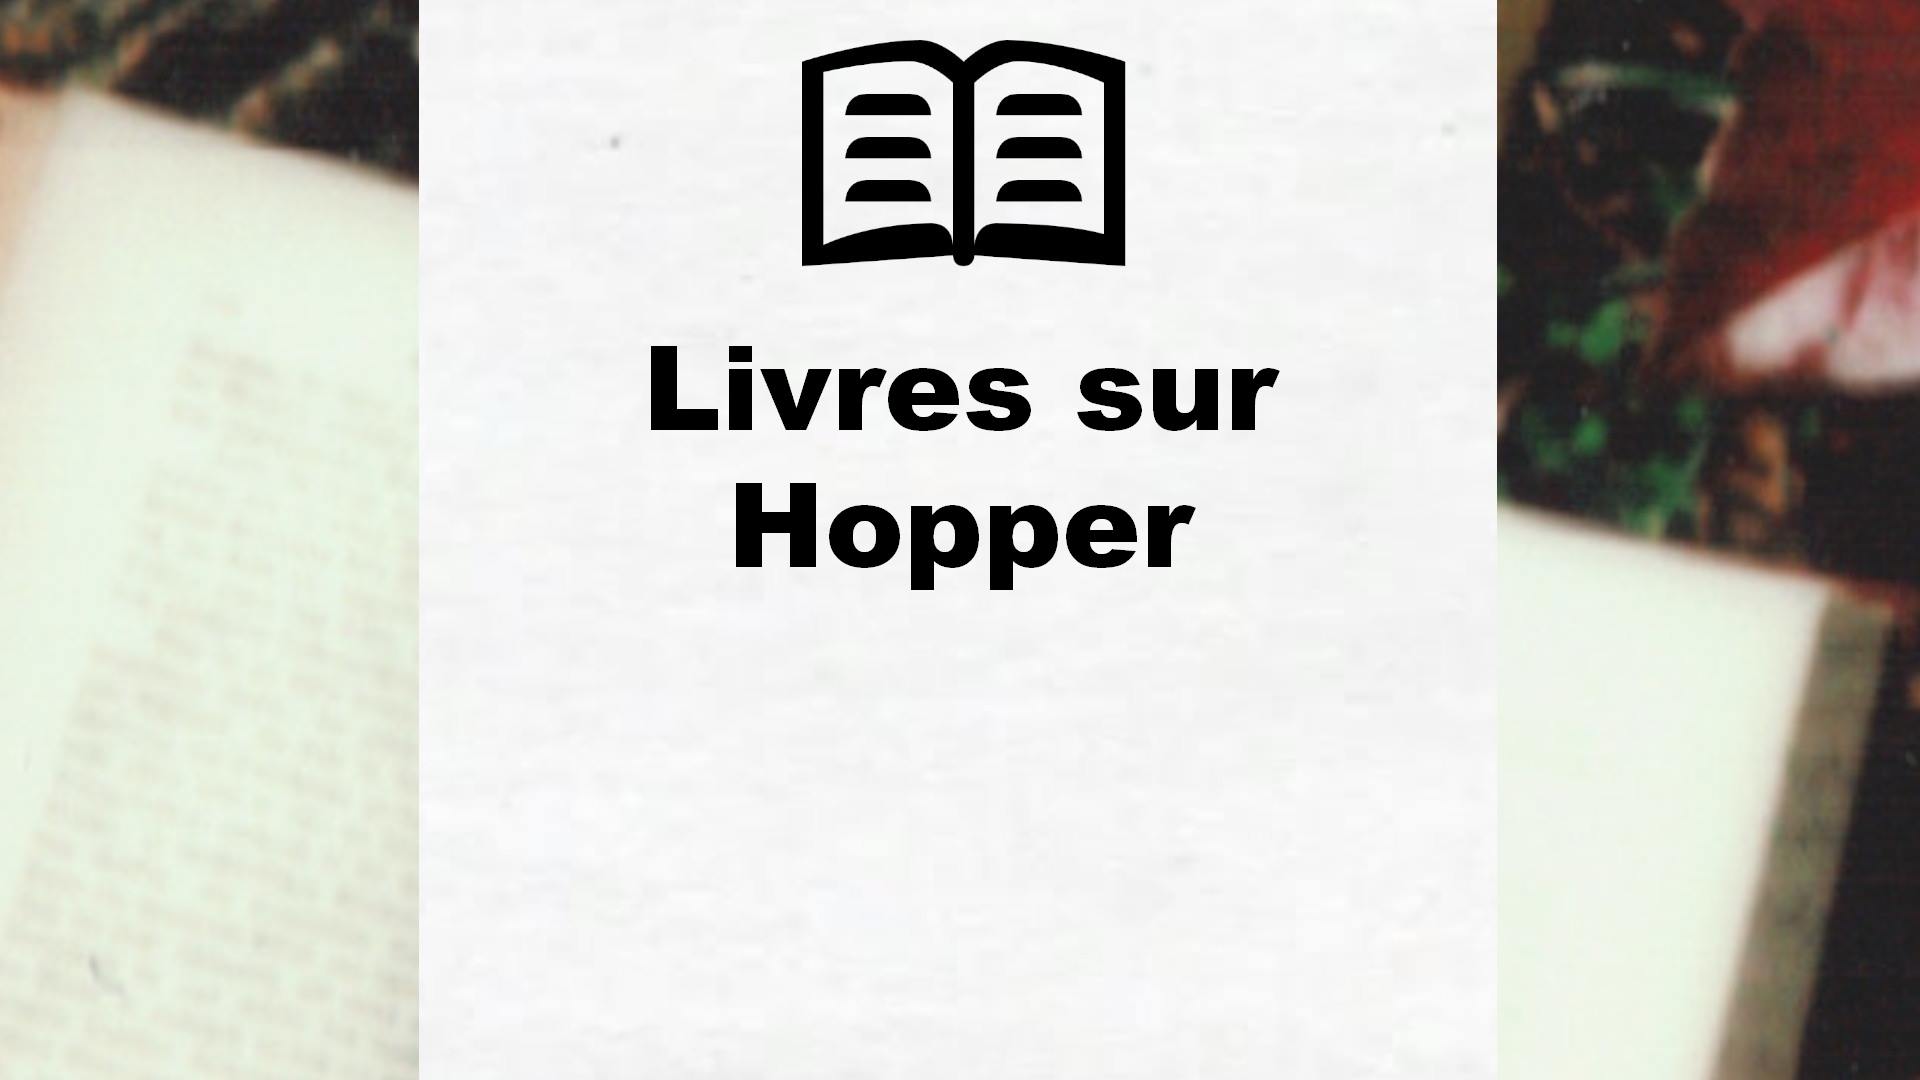 Livres sur Hopper